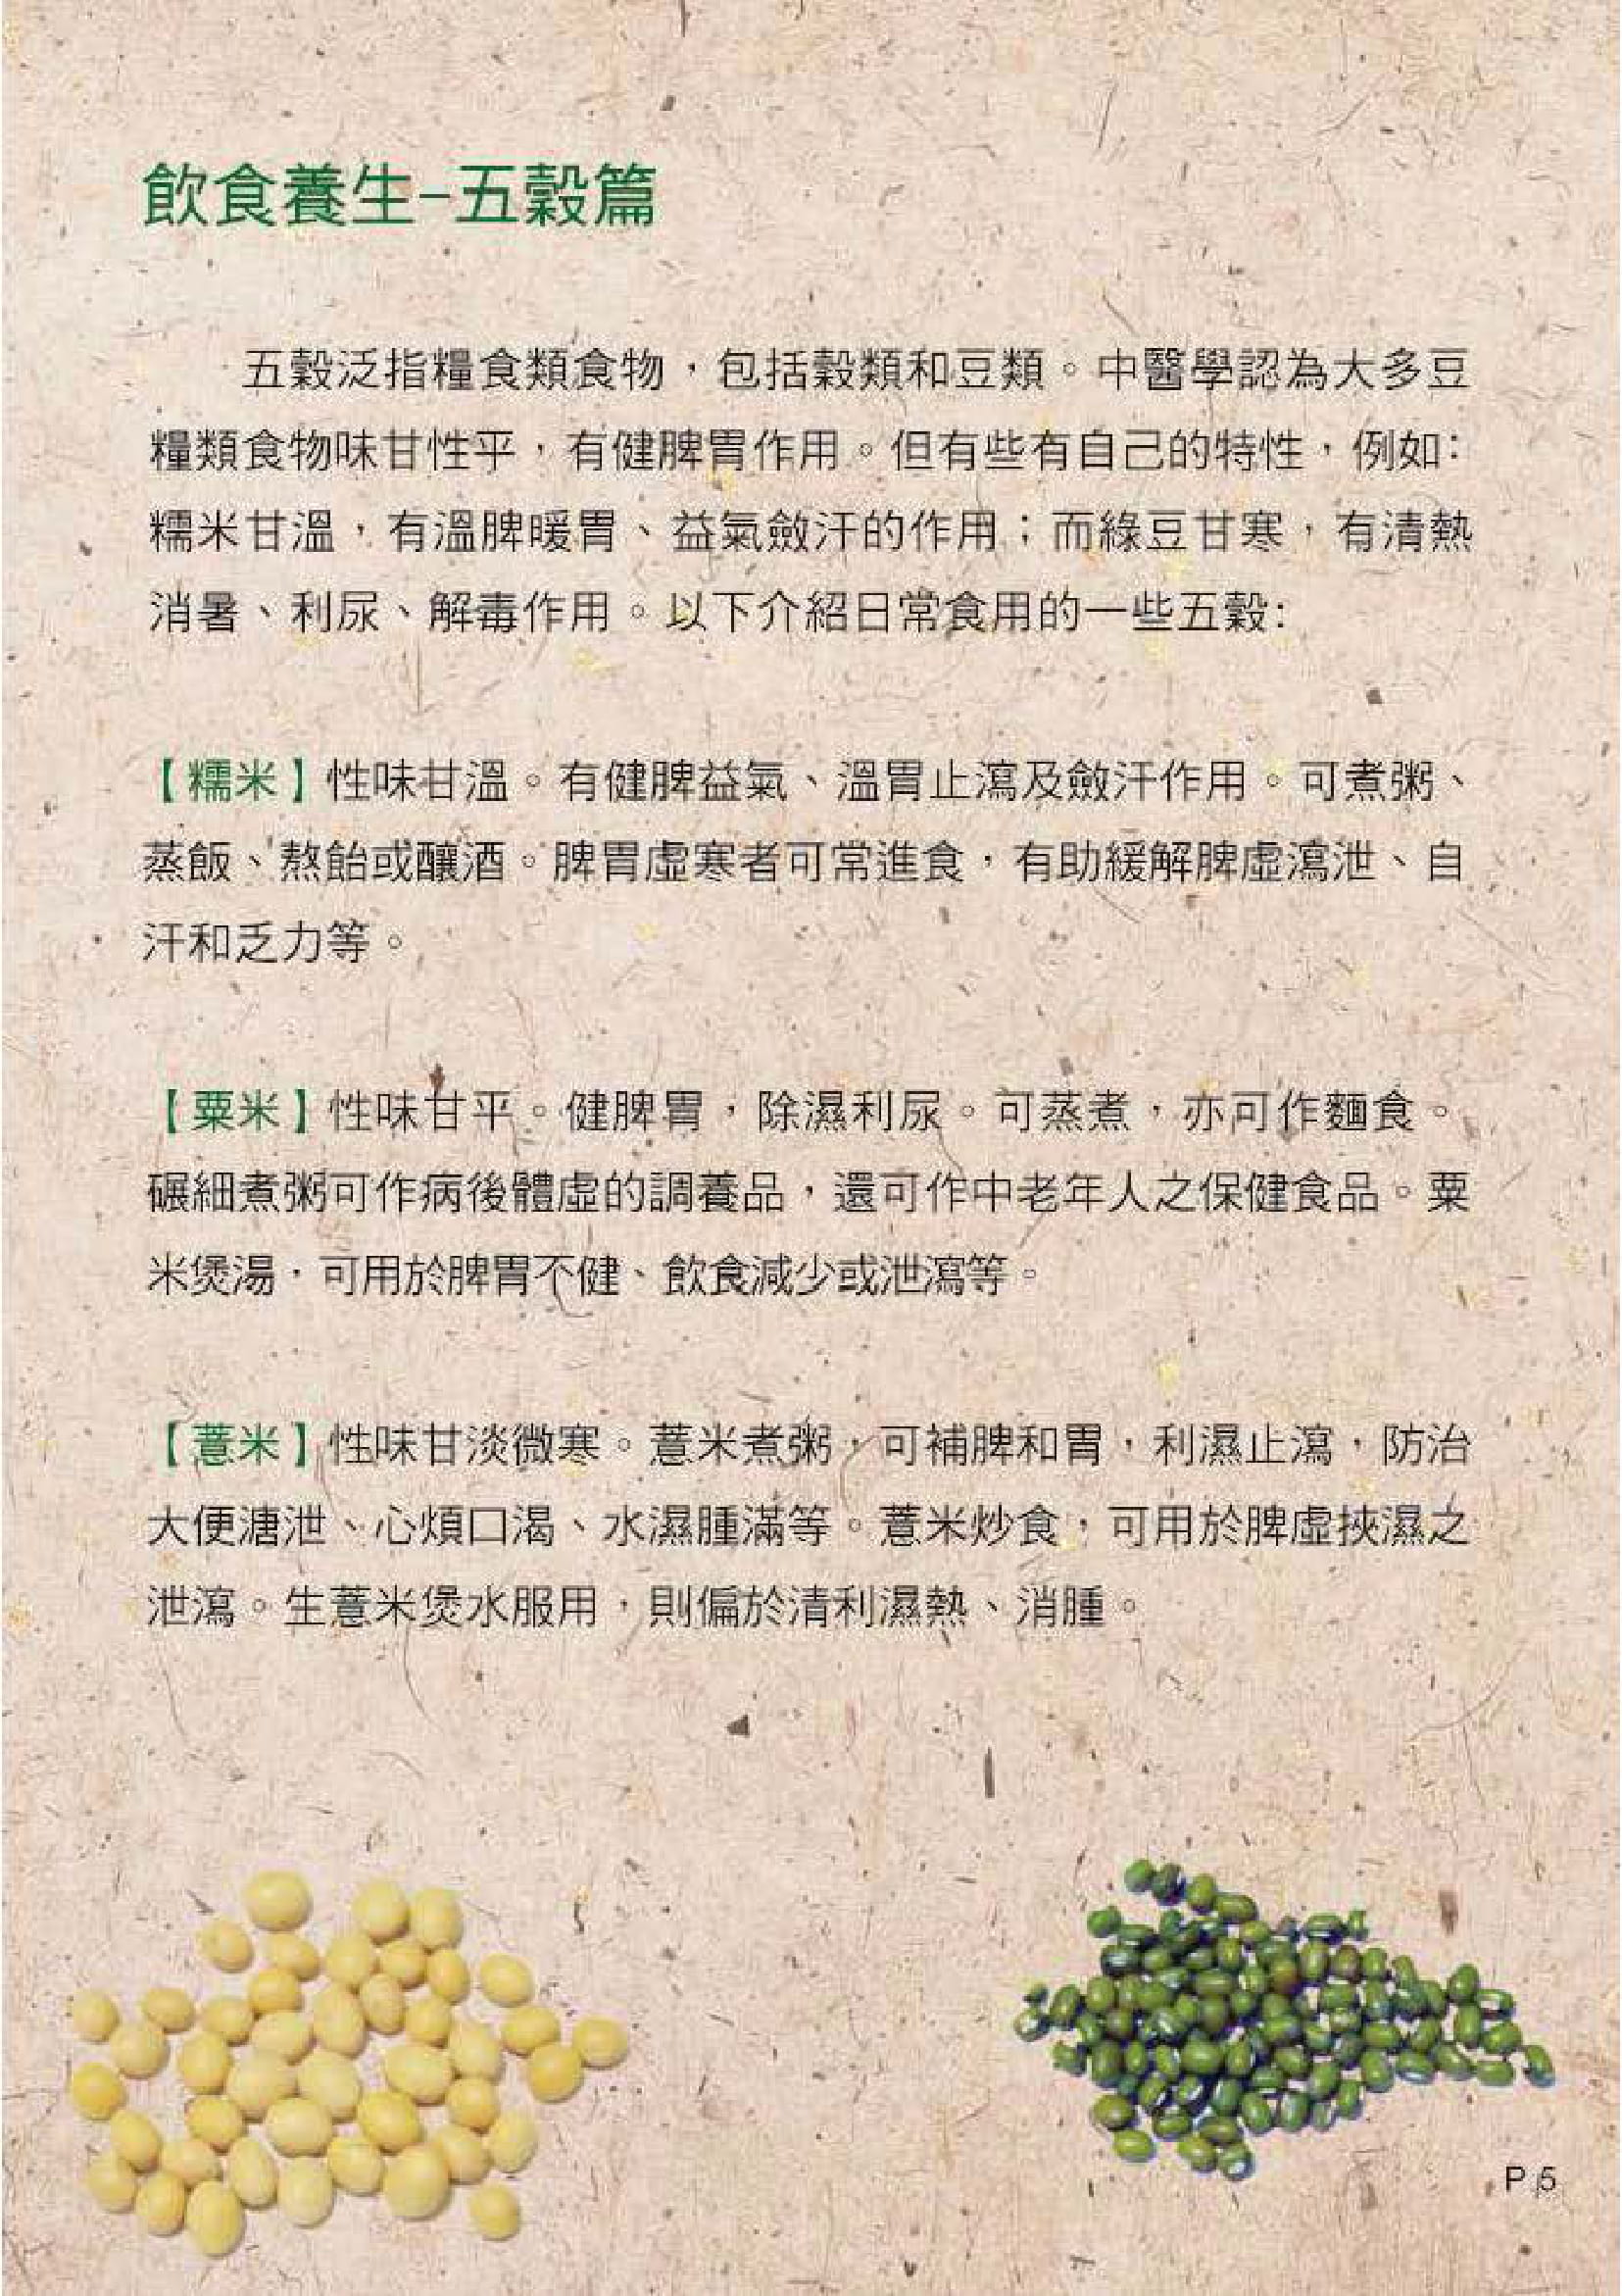 此图片展示《中医饮食养生 - 五谷与蔬果》刊物的第5页